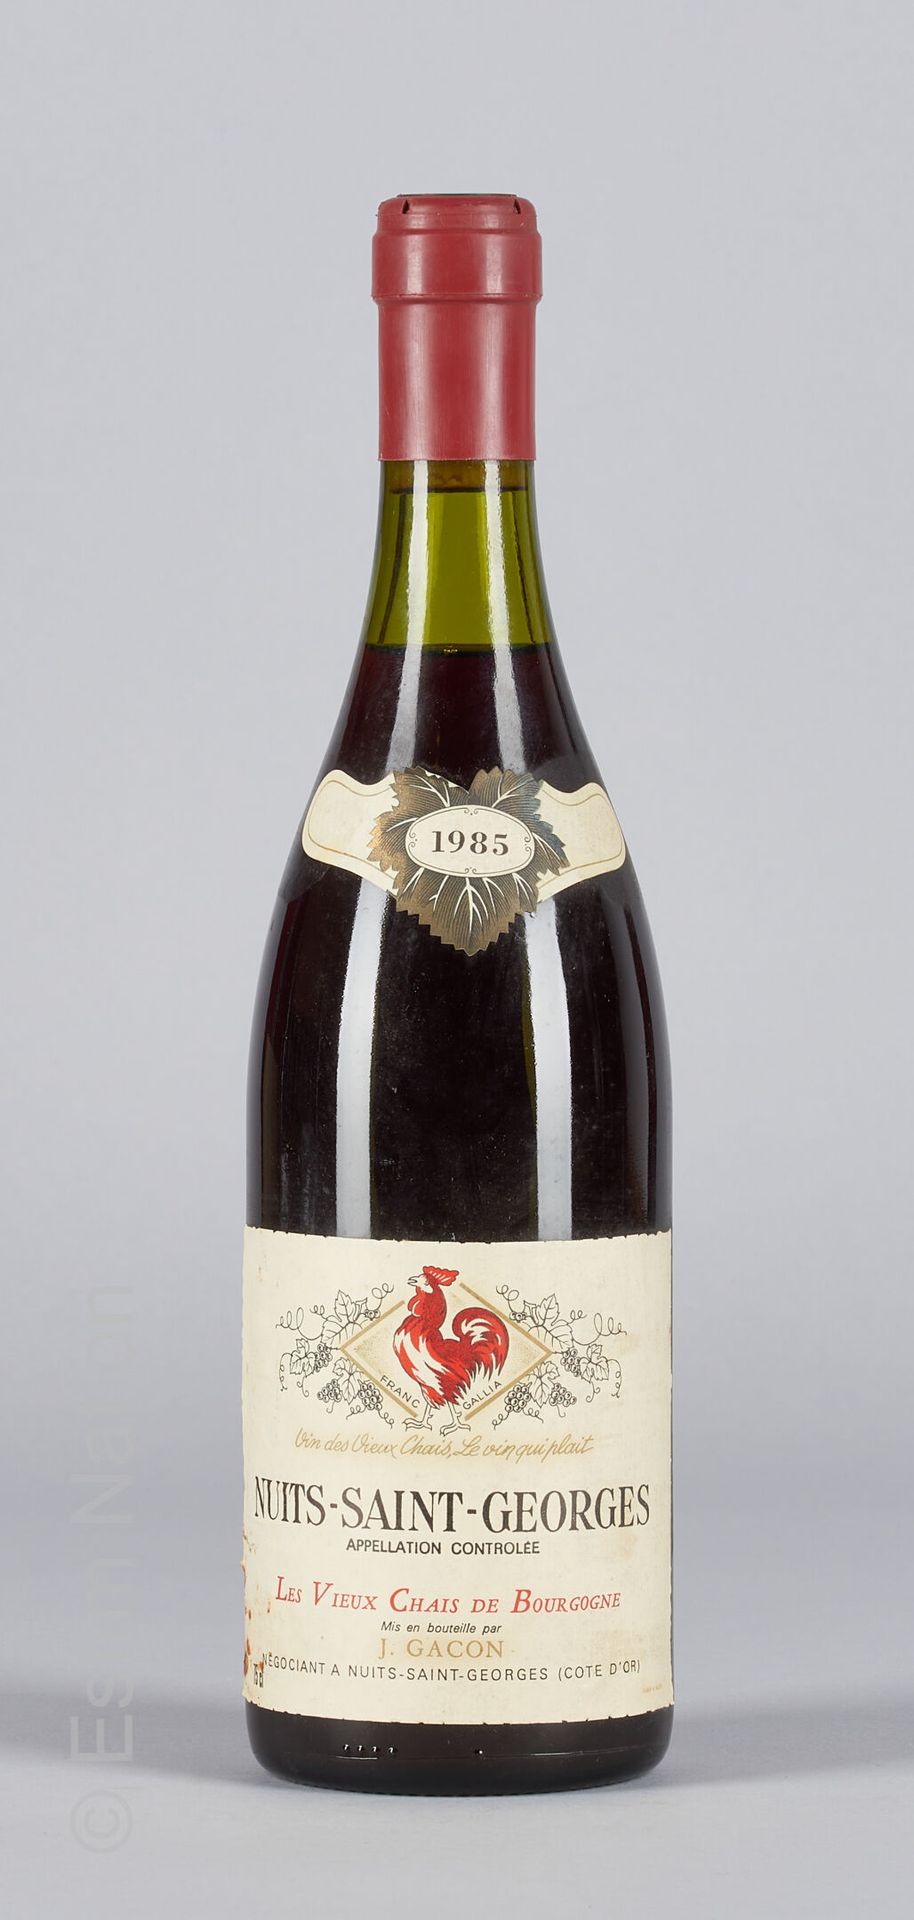 BOURGOGNE 1 bottle of Nuits Saint-Georges 1985 Les vieux chais de Bourgogne J. G&hellip;